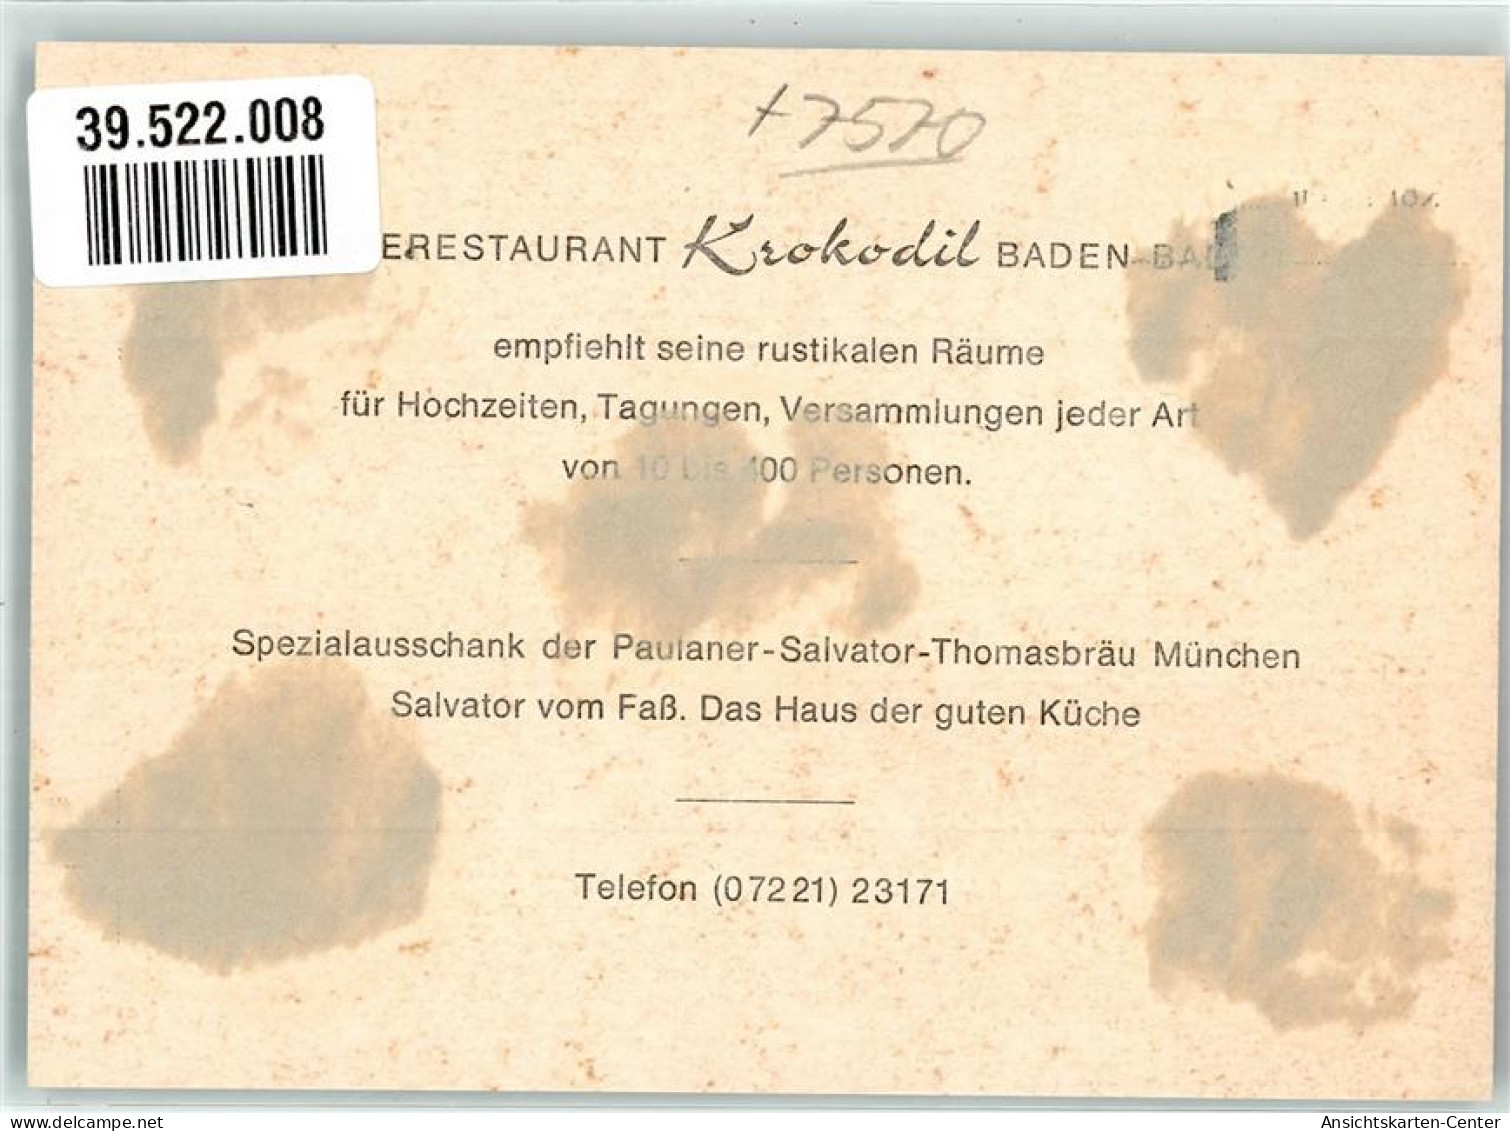 39522008 - Baden-Baden - Baden-Baden